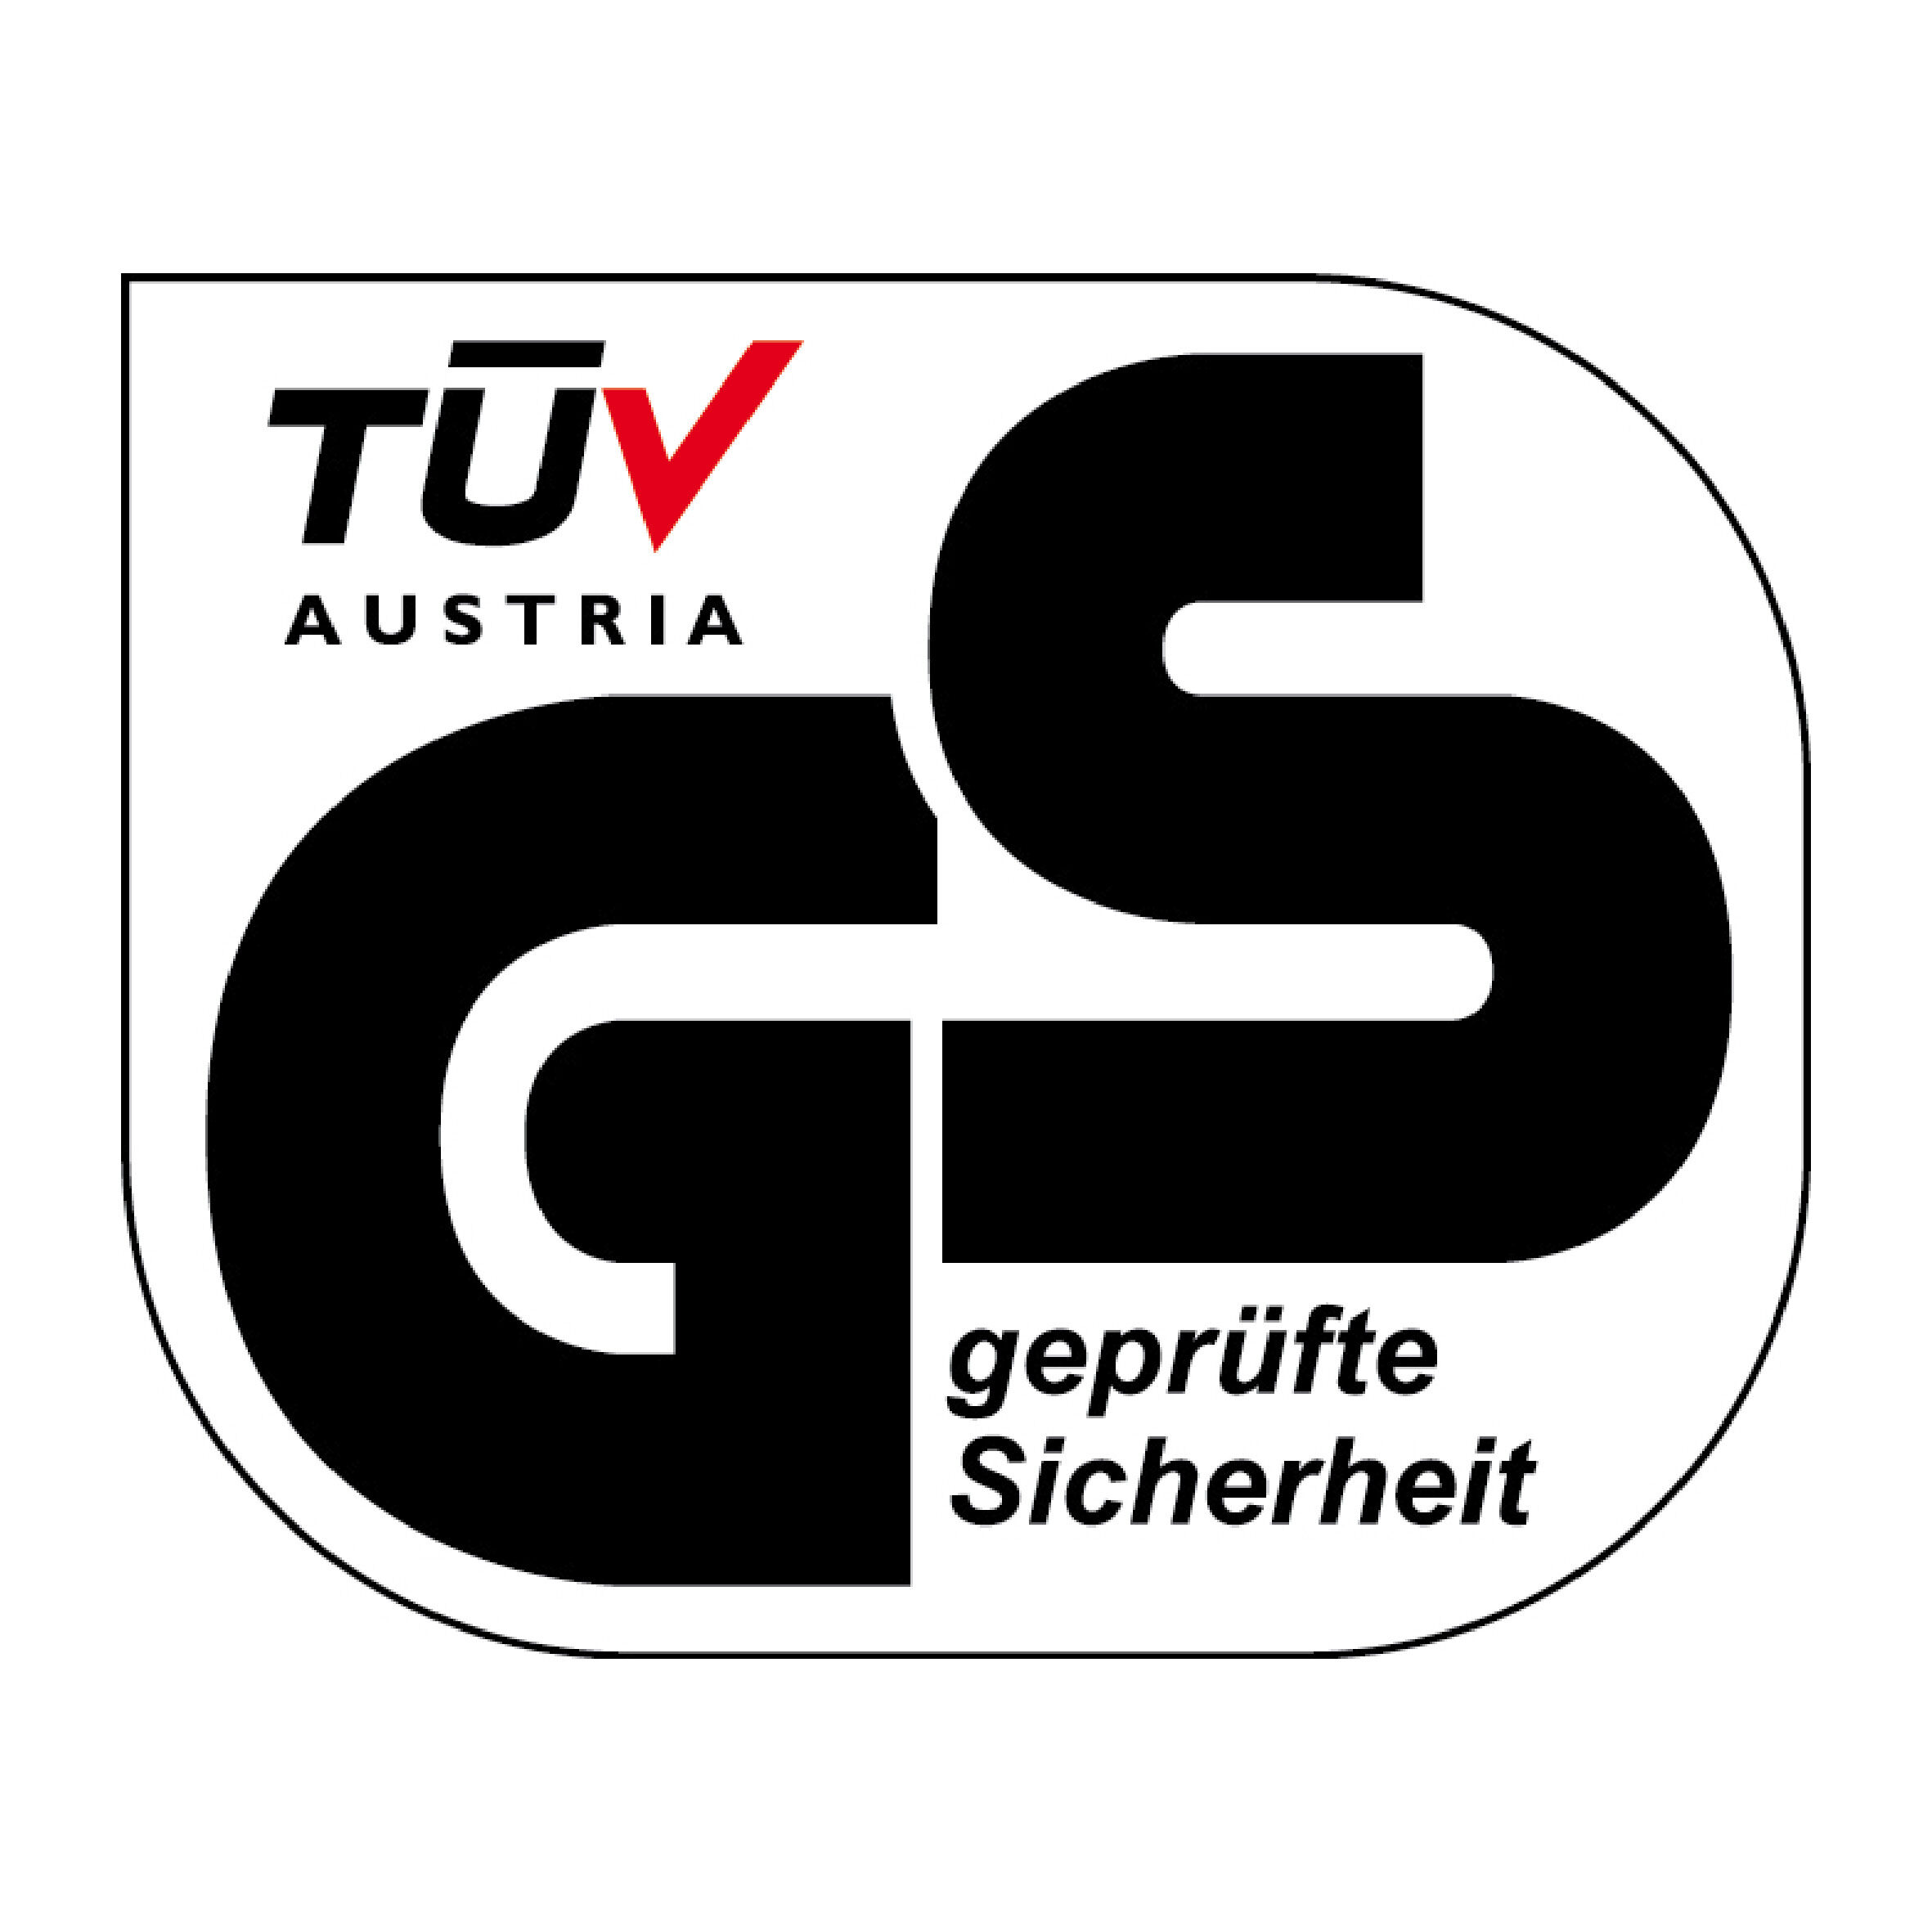 TÜV Austria geprüfte Sicherheit